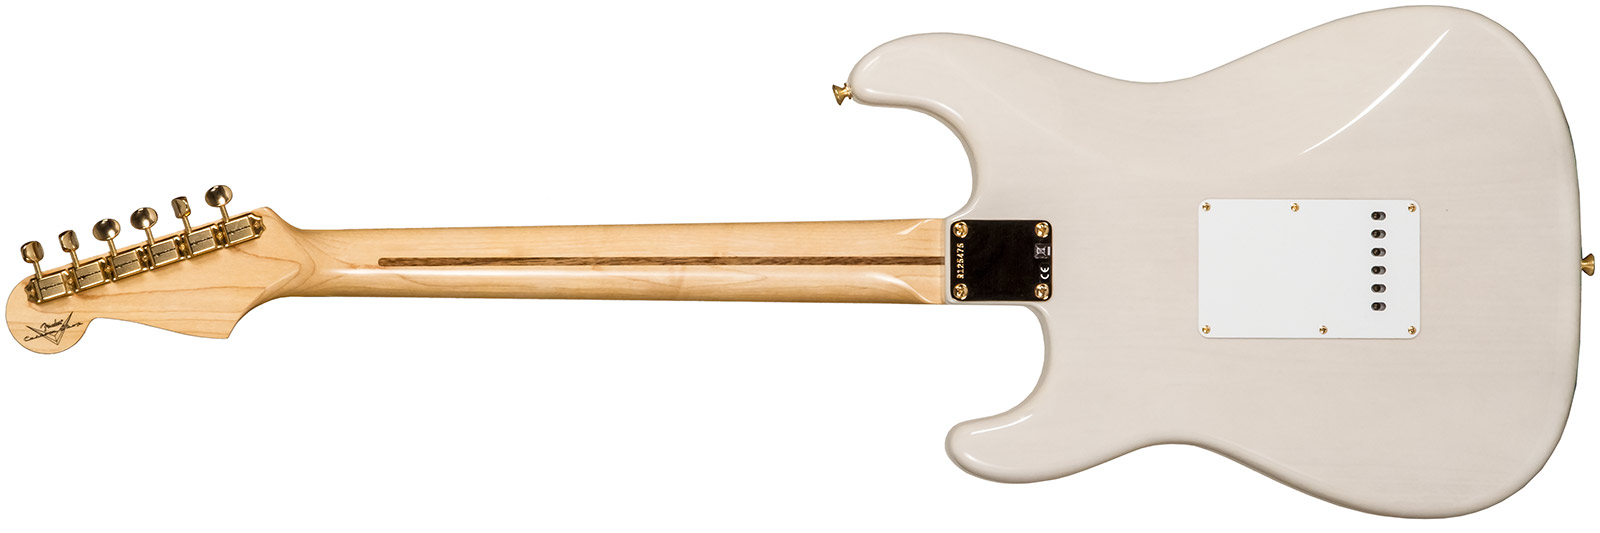 Fender Custom Shop Strat 1957 3s Trem Mn #r125475 - Nos White Blonde - Guitare Électrique Forme Str - Variation 1